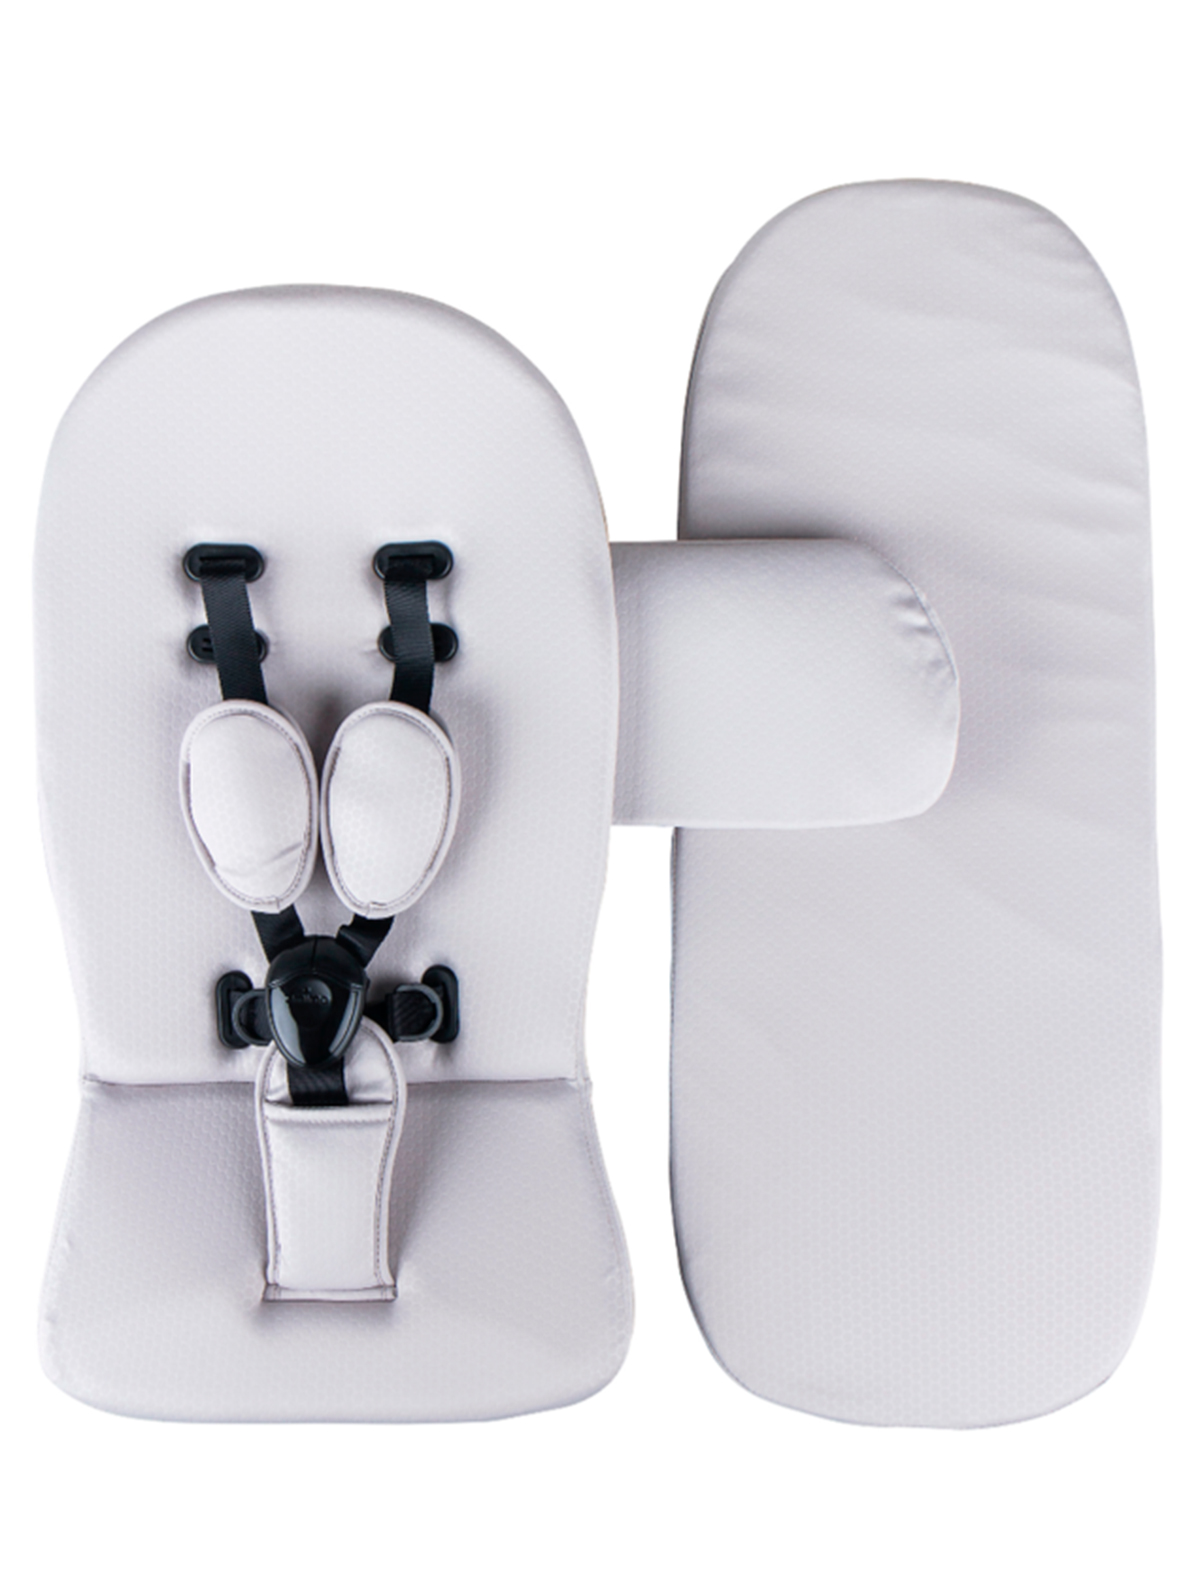 Аксессуар для коляски Mima mima отделка для коляски bo fashion kit